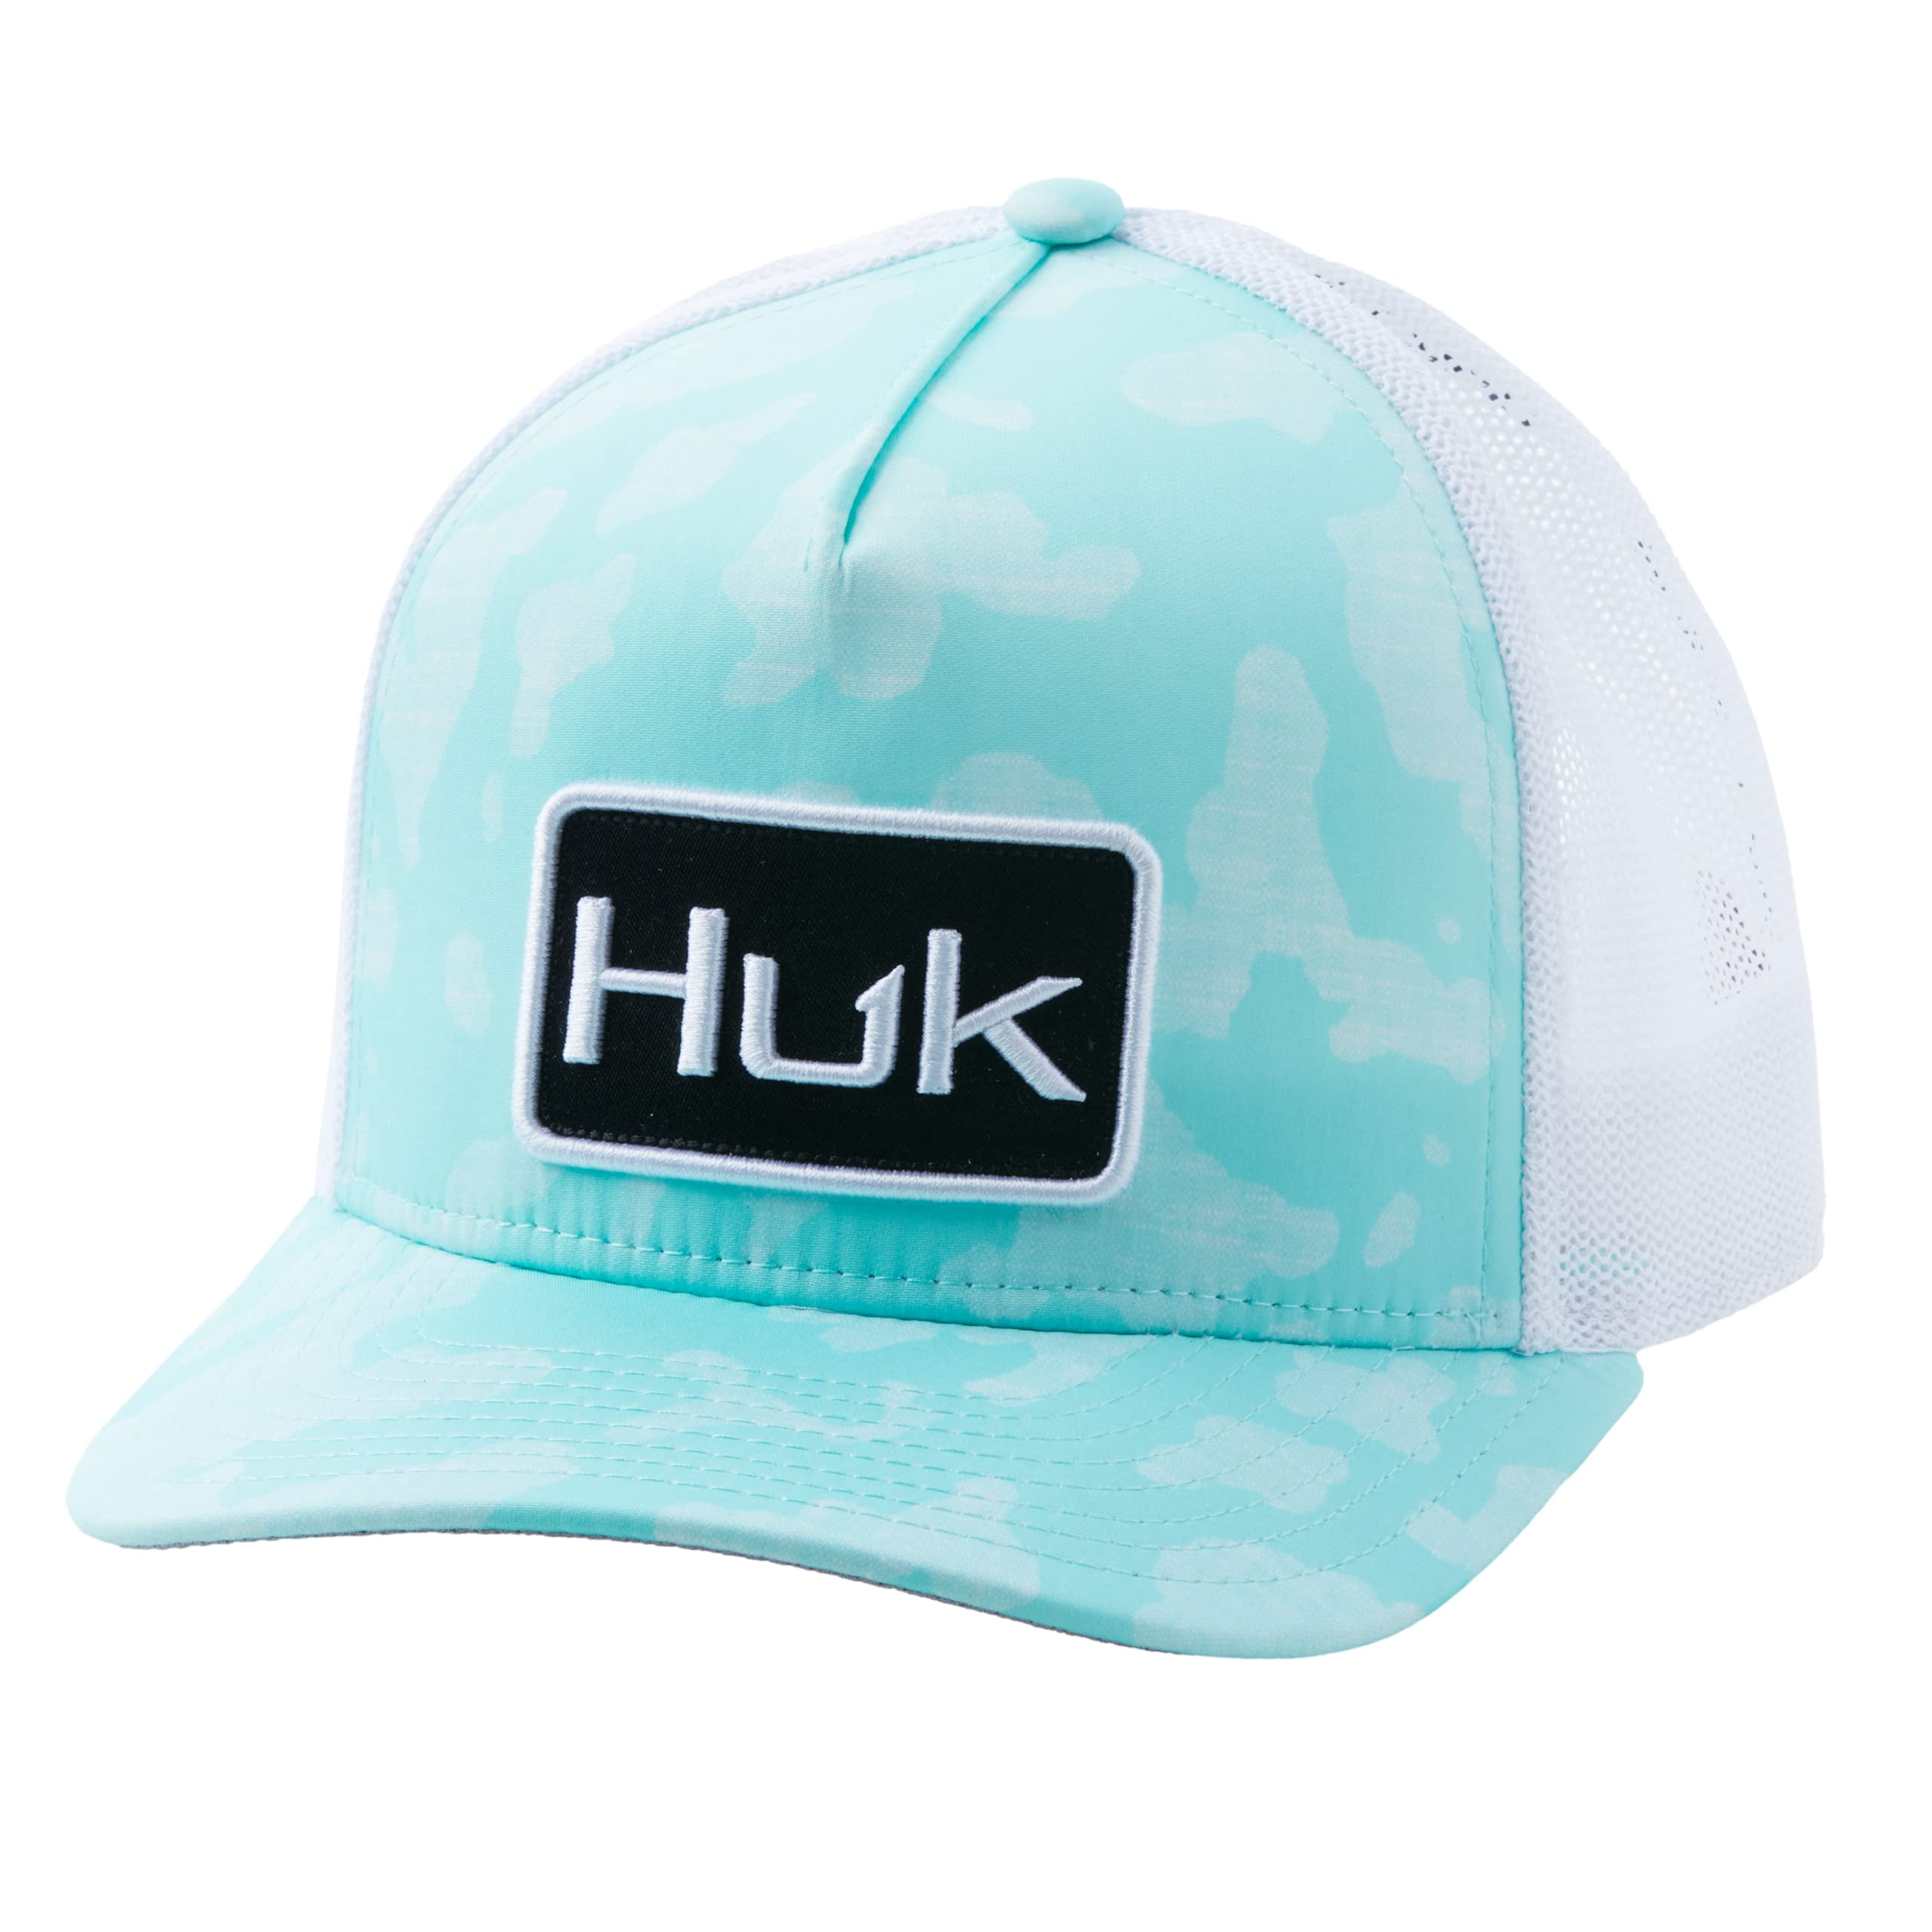 Huk Running Lakes Trucker (Running Lakes - Beach Glass, One Size